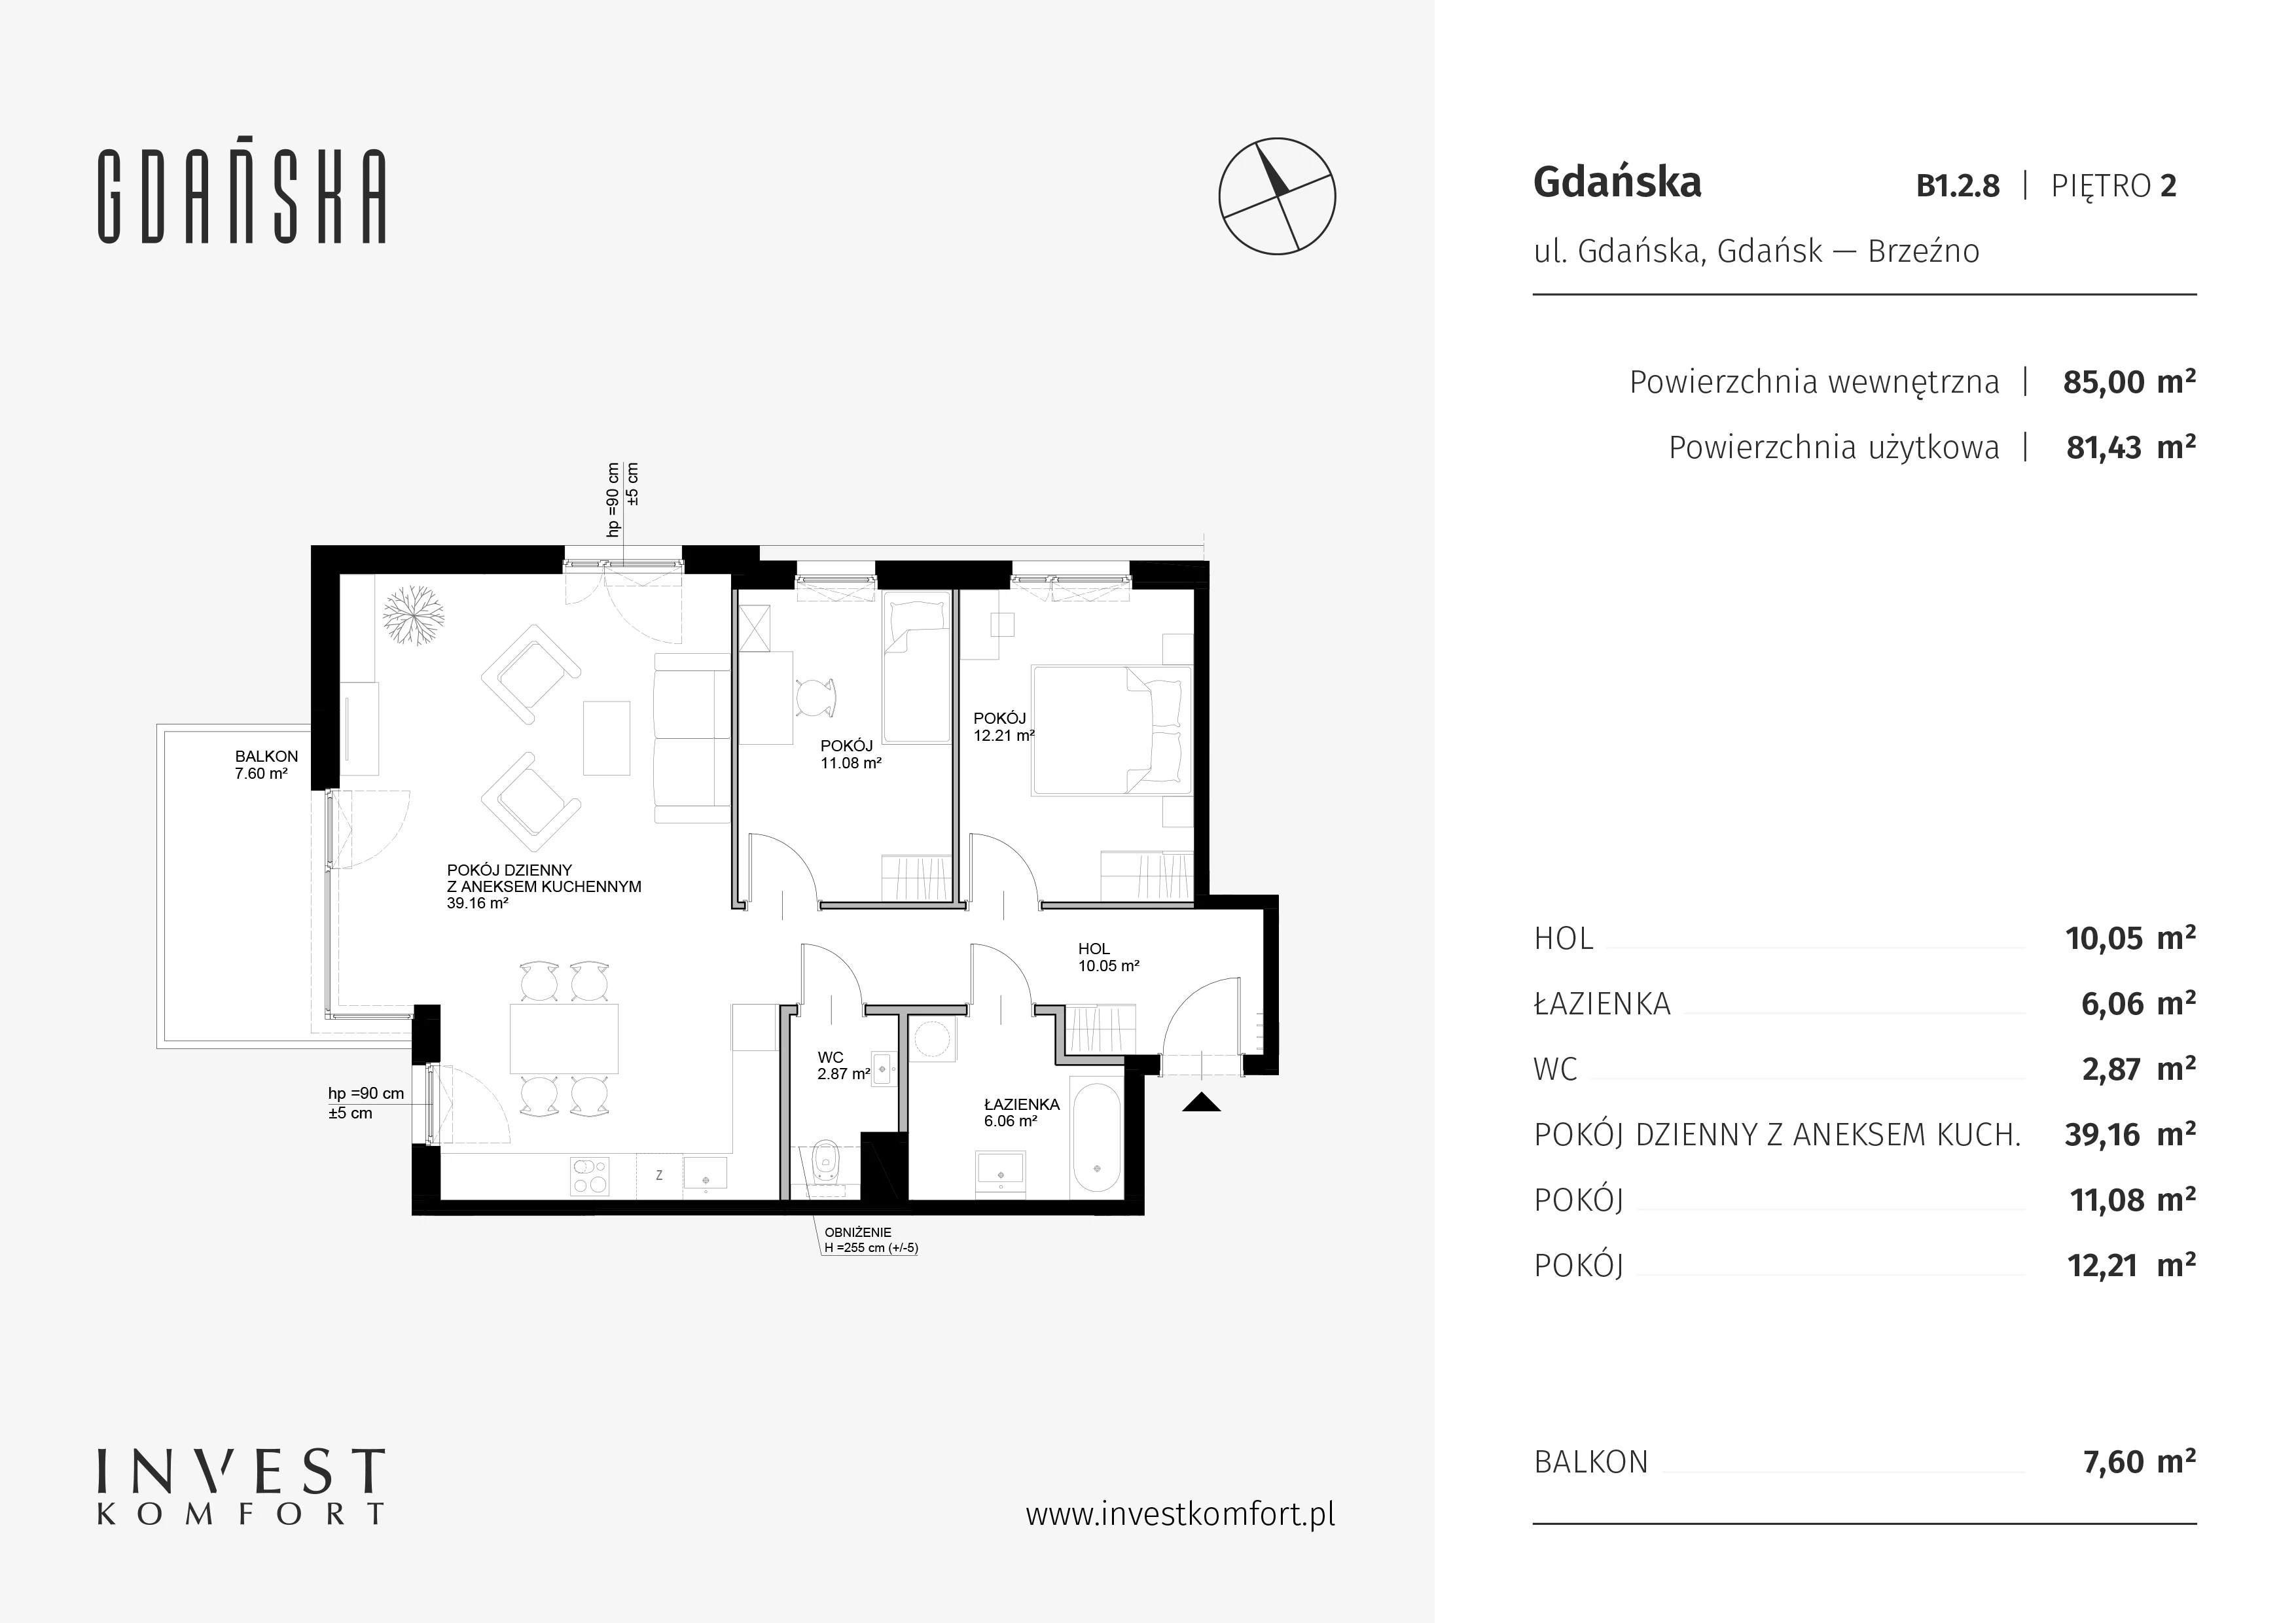 Mieszkanie 85,00 m², piętro 2, oferta nr B1.2.8, Gdańska, Gdańsk, Brzeźno, ul. Gdańska